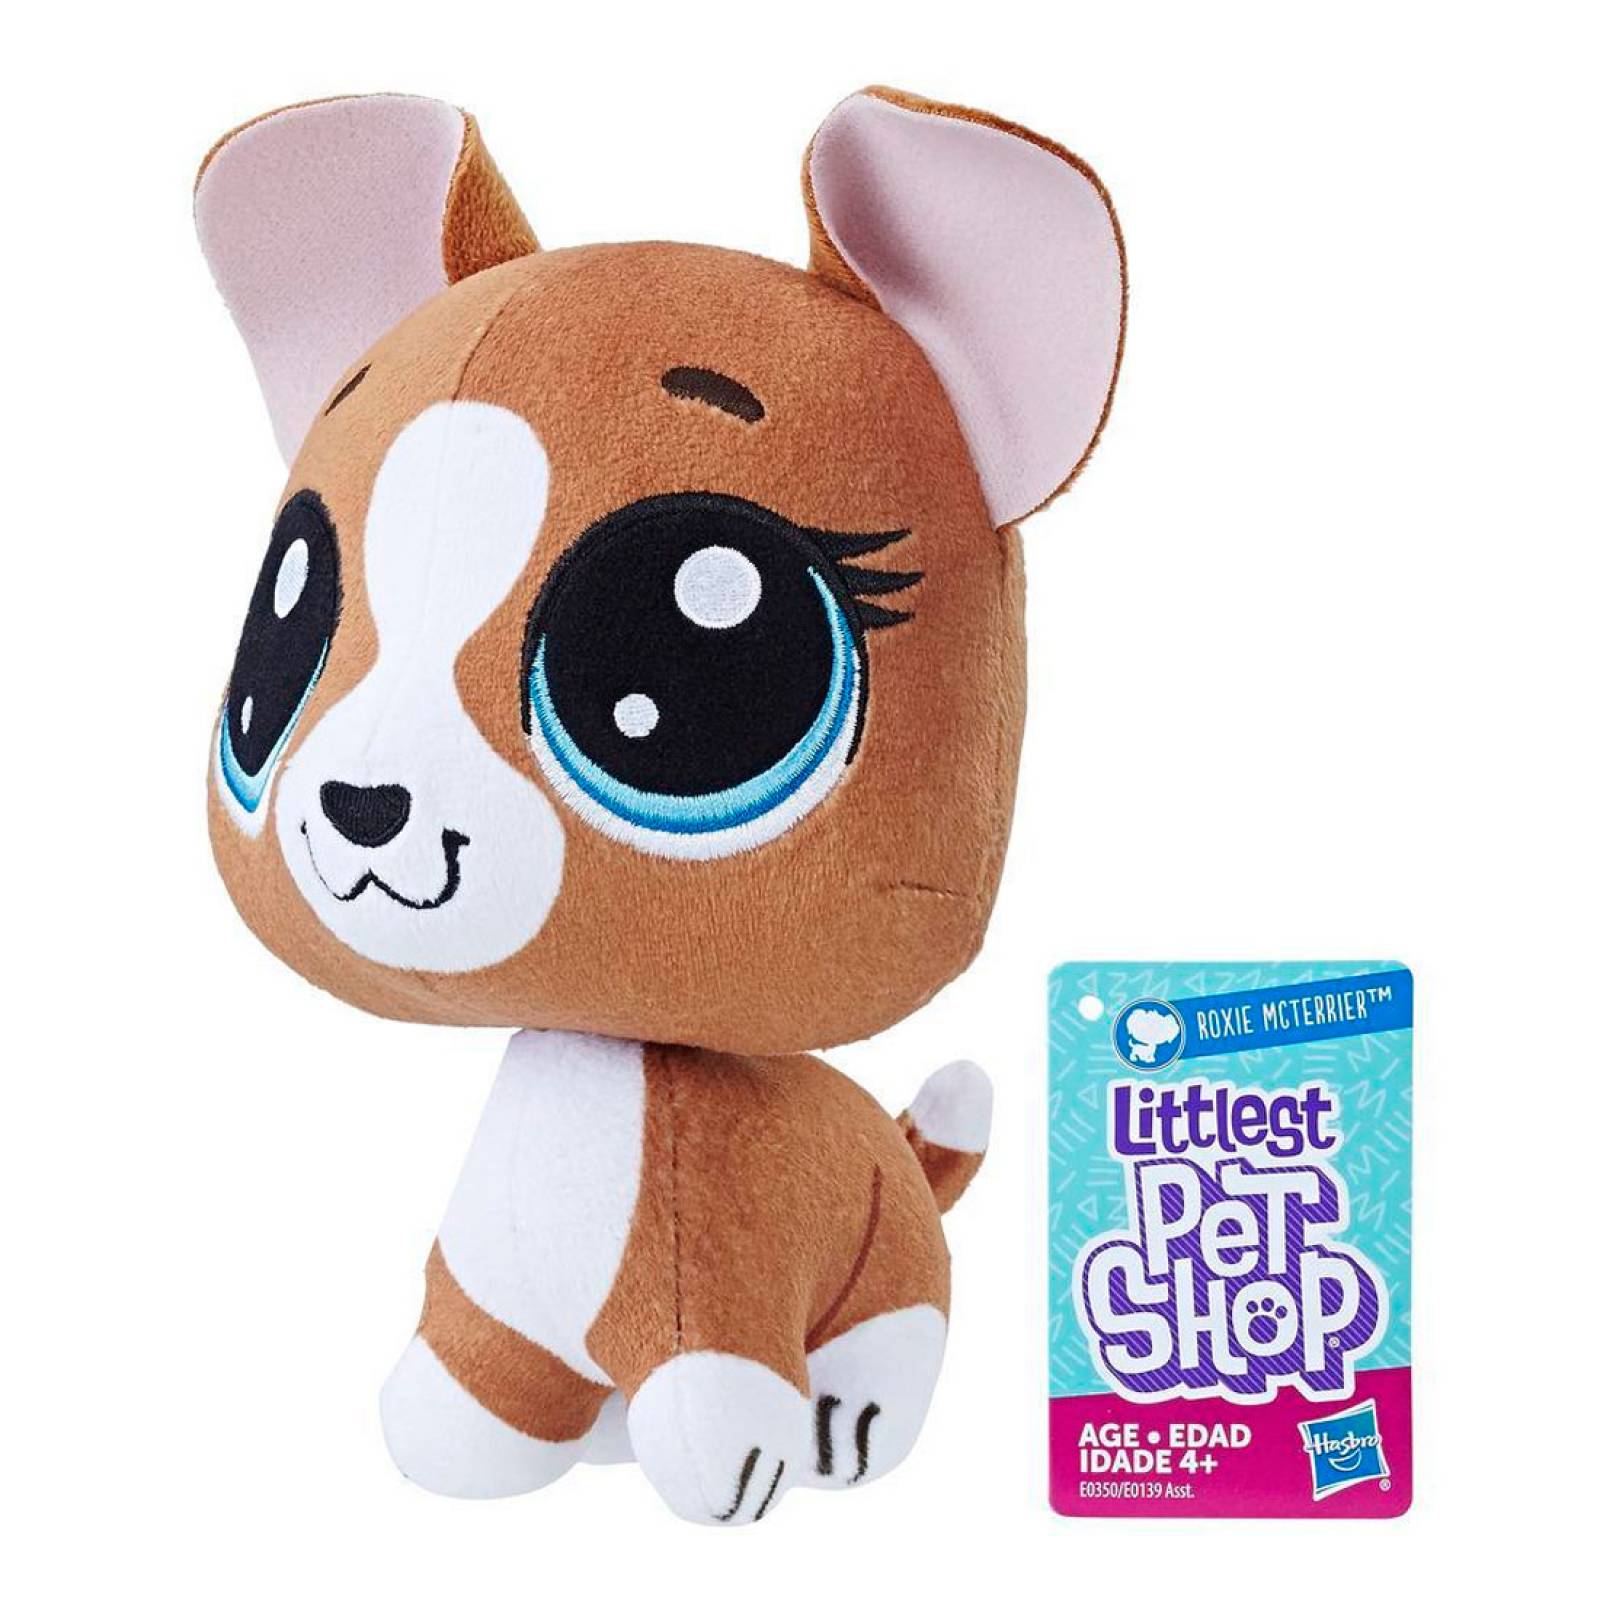 Peluches Coleccionables Littlest Pet Shop Assortment Hasbro